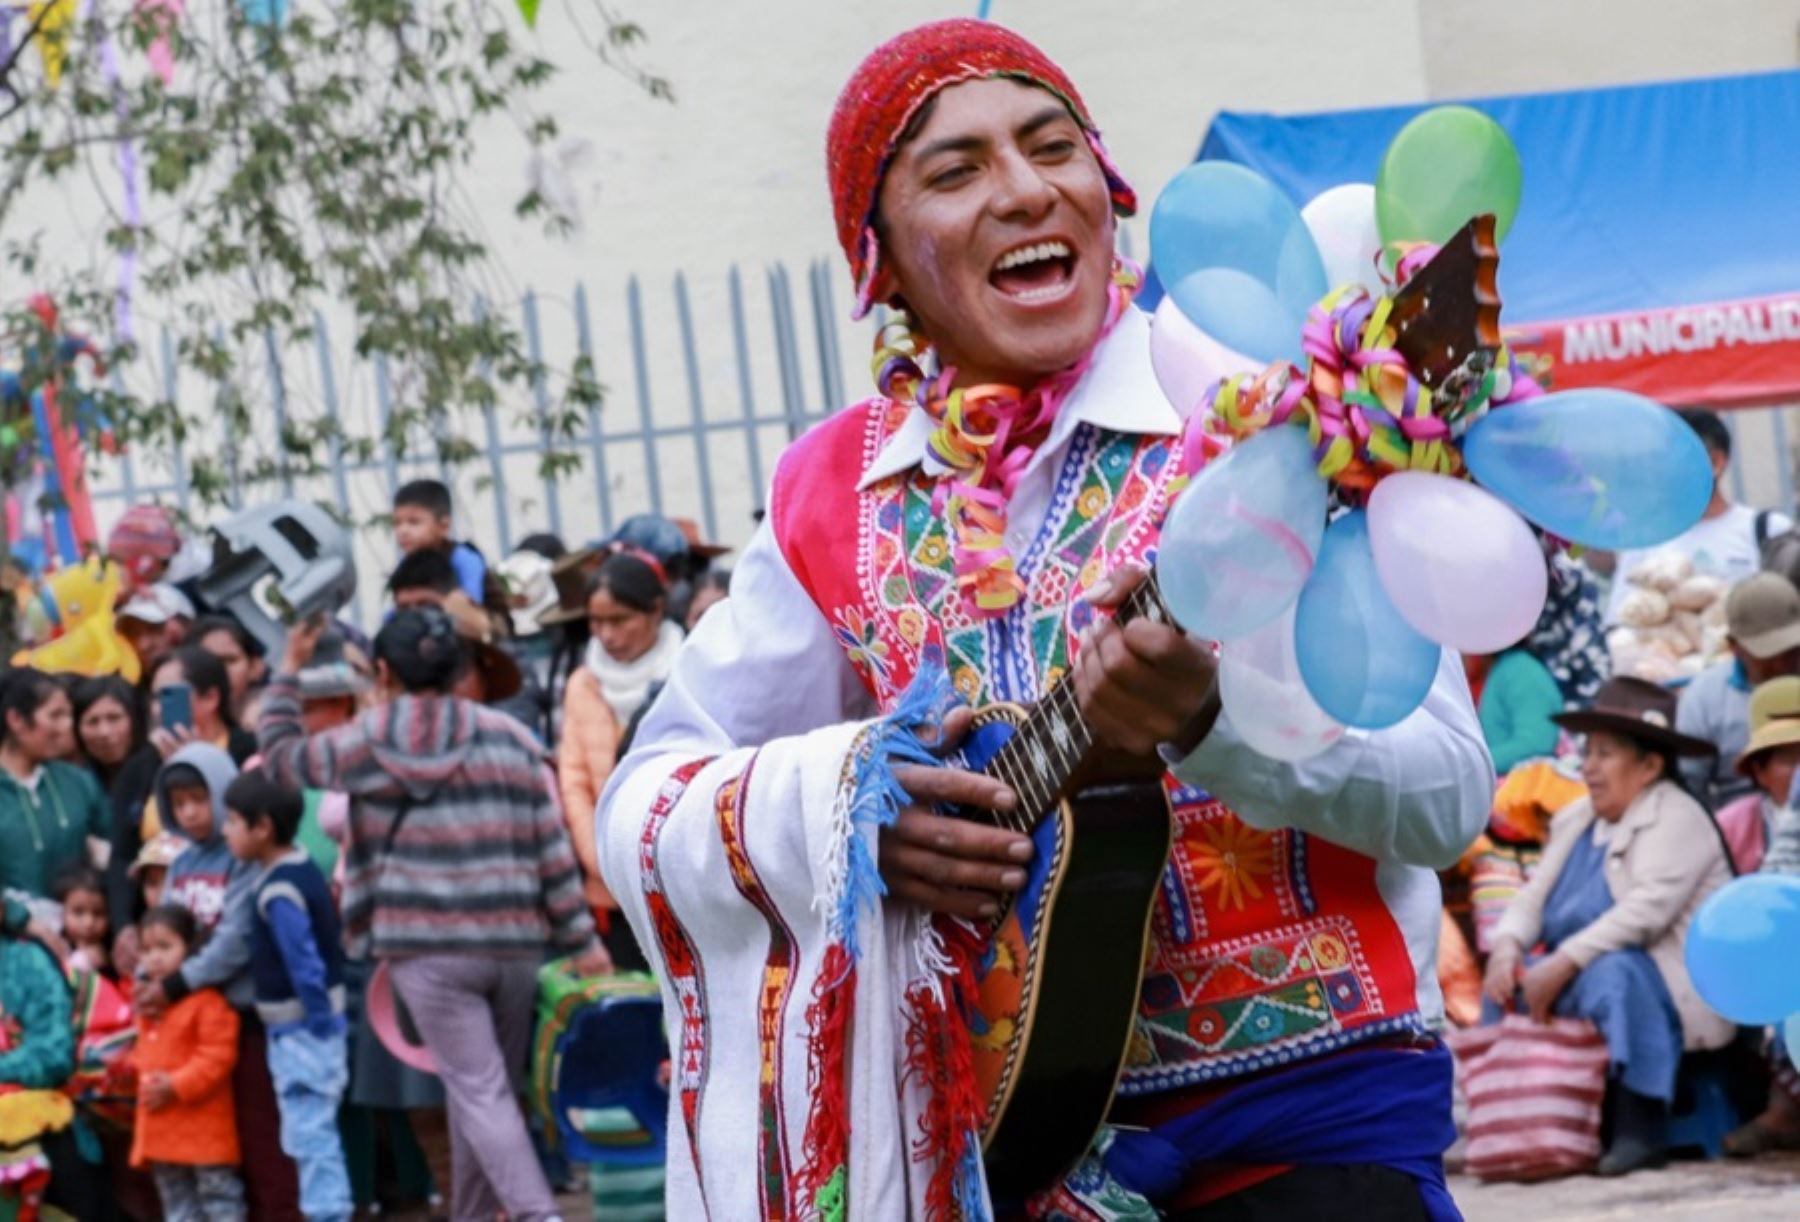 Aunque tiene como expresión similar el júbilo exultante y la unánime participación de la comunidad local e incluso de visitantes nacionales y extranjeros, el Carnaval cusqueño se distingue de las otras festividades carnavalescas que acontecen en diversas regiones del Perú por su originalidad marcada por tradiciones, costumbres, danzas y música genuinas que identifican a los descendientes de los incas.